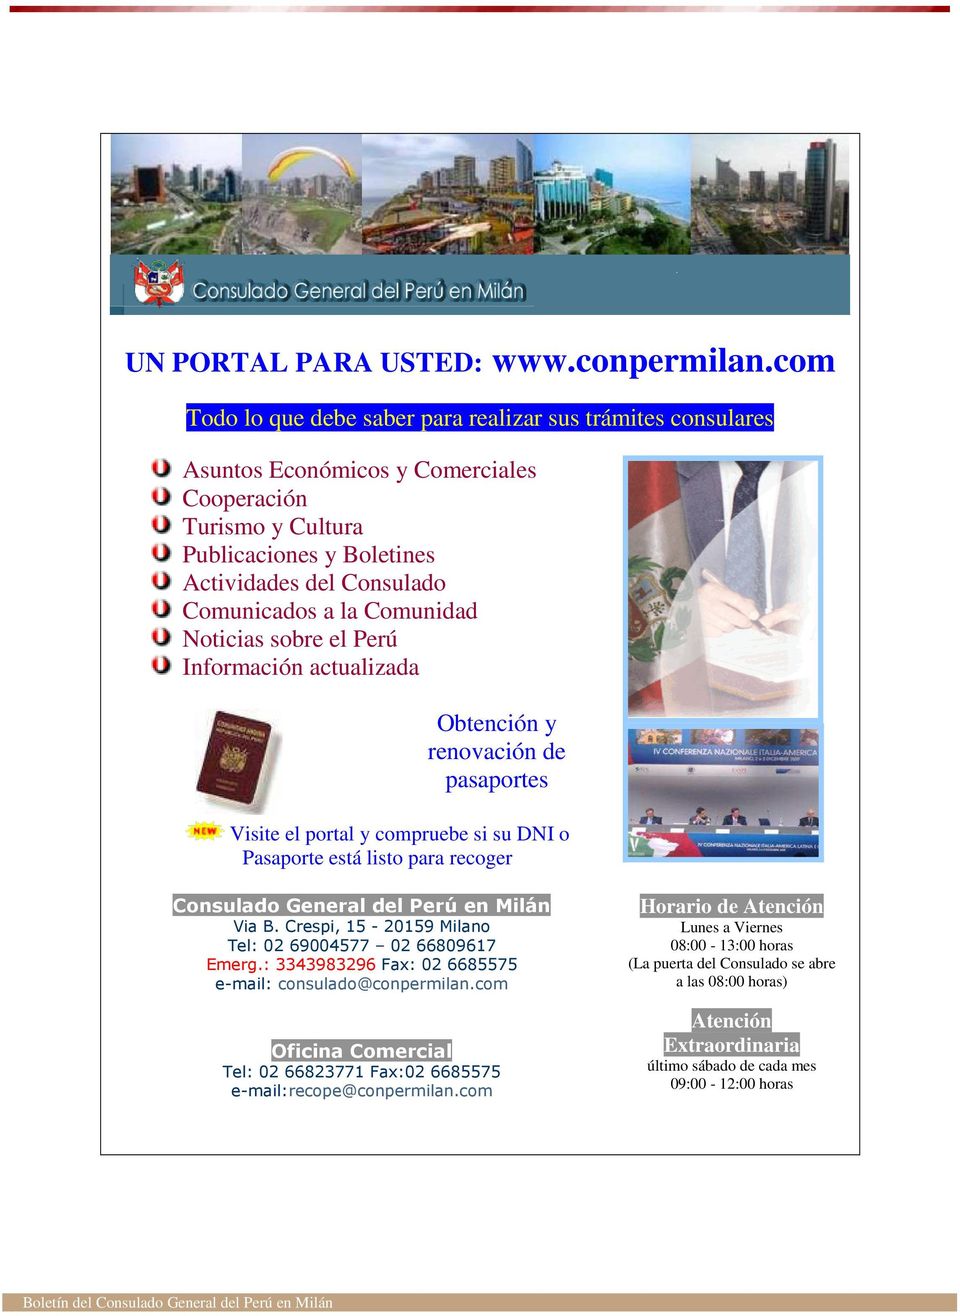 Comunidad Noticias sobre el Perú Información actualizada Obtención y renovación de pasaportes Visite el portal y compruebe si su DNI o Pasaporte está listo para recoger Consulado General del Perú en